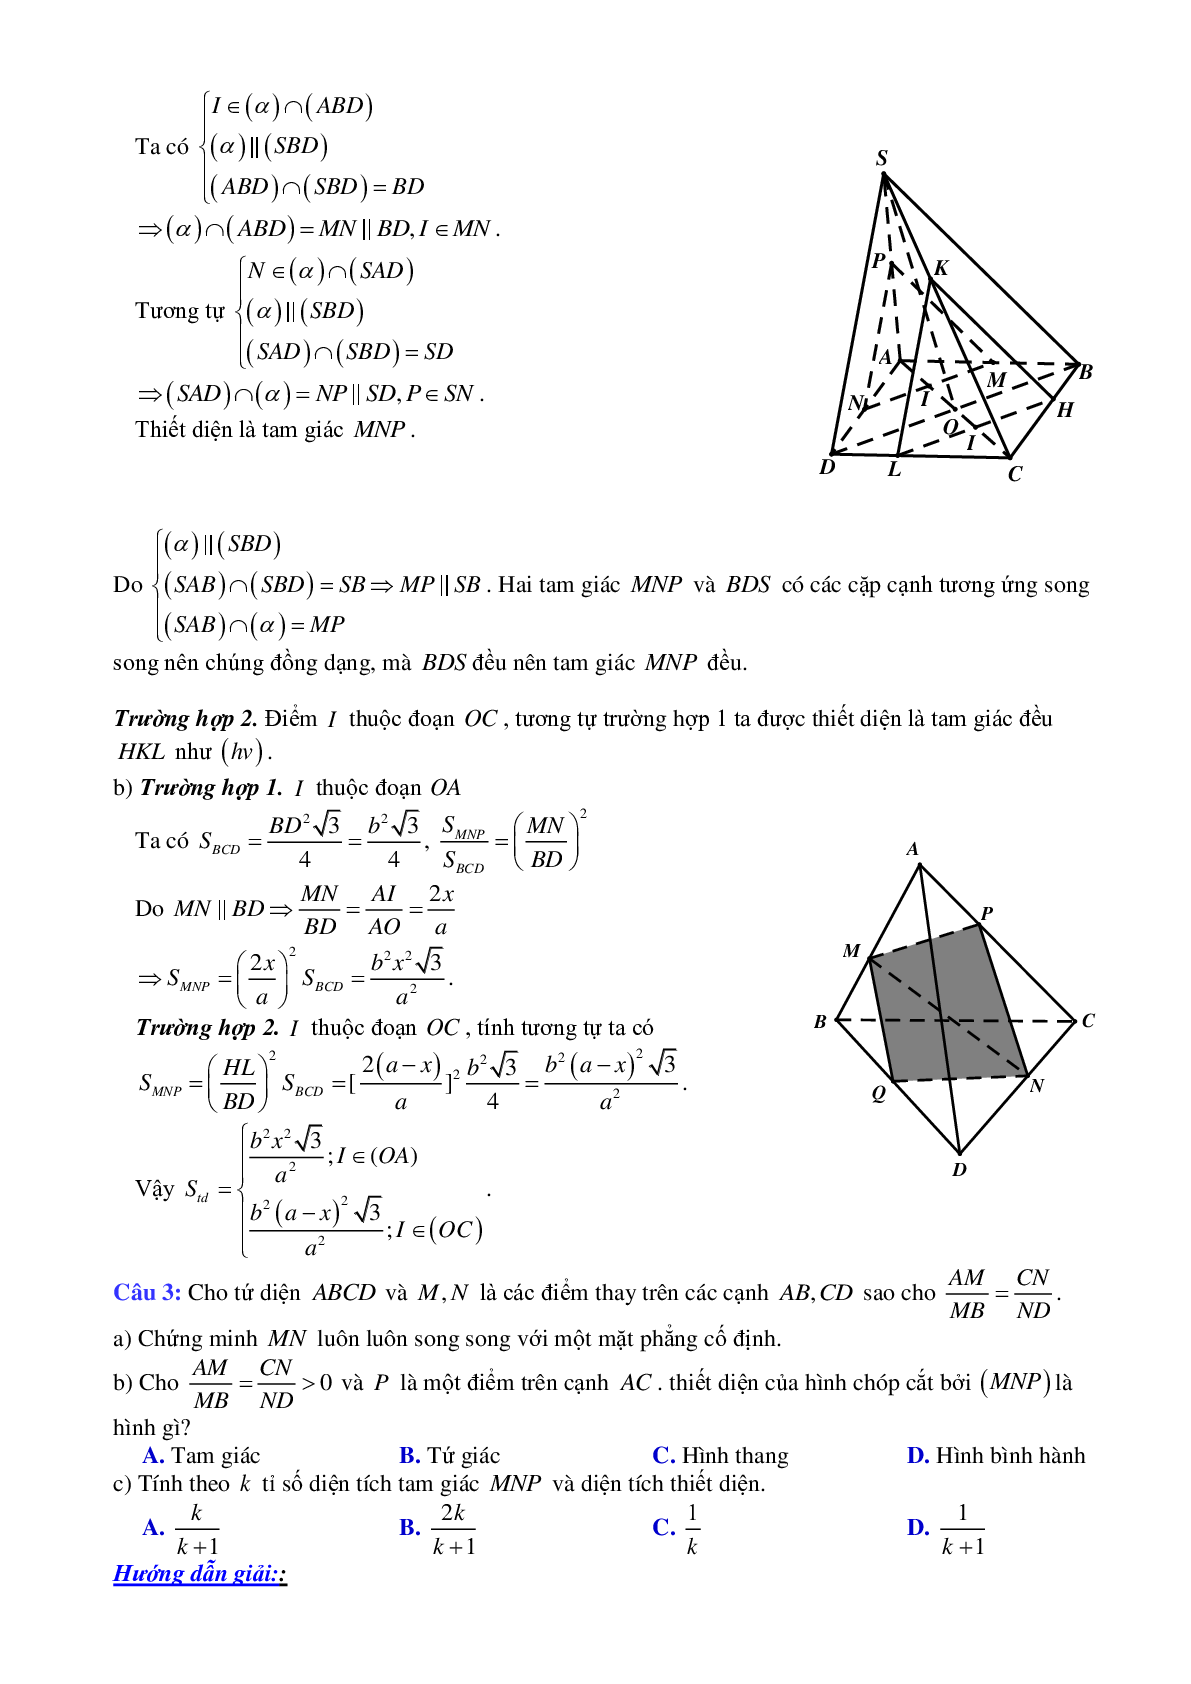 Phương pháp giải và bài tập về Cách xác định thiết diện của (α) với hình chóp khi biết (α) với một mặt phẳng (β) cho trước (trang 2)